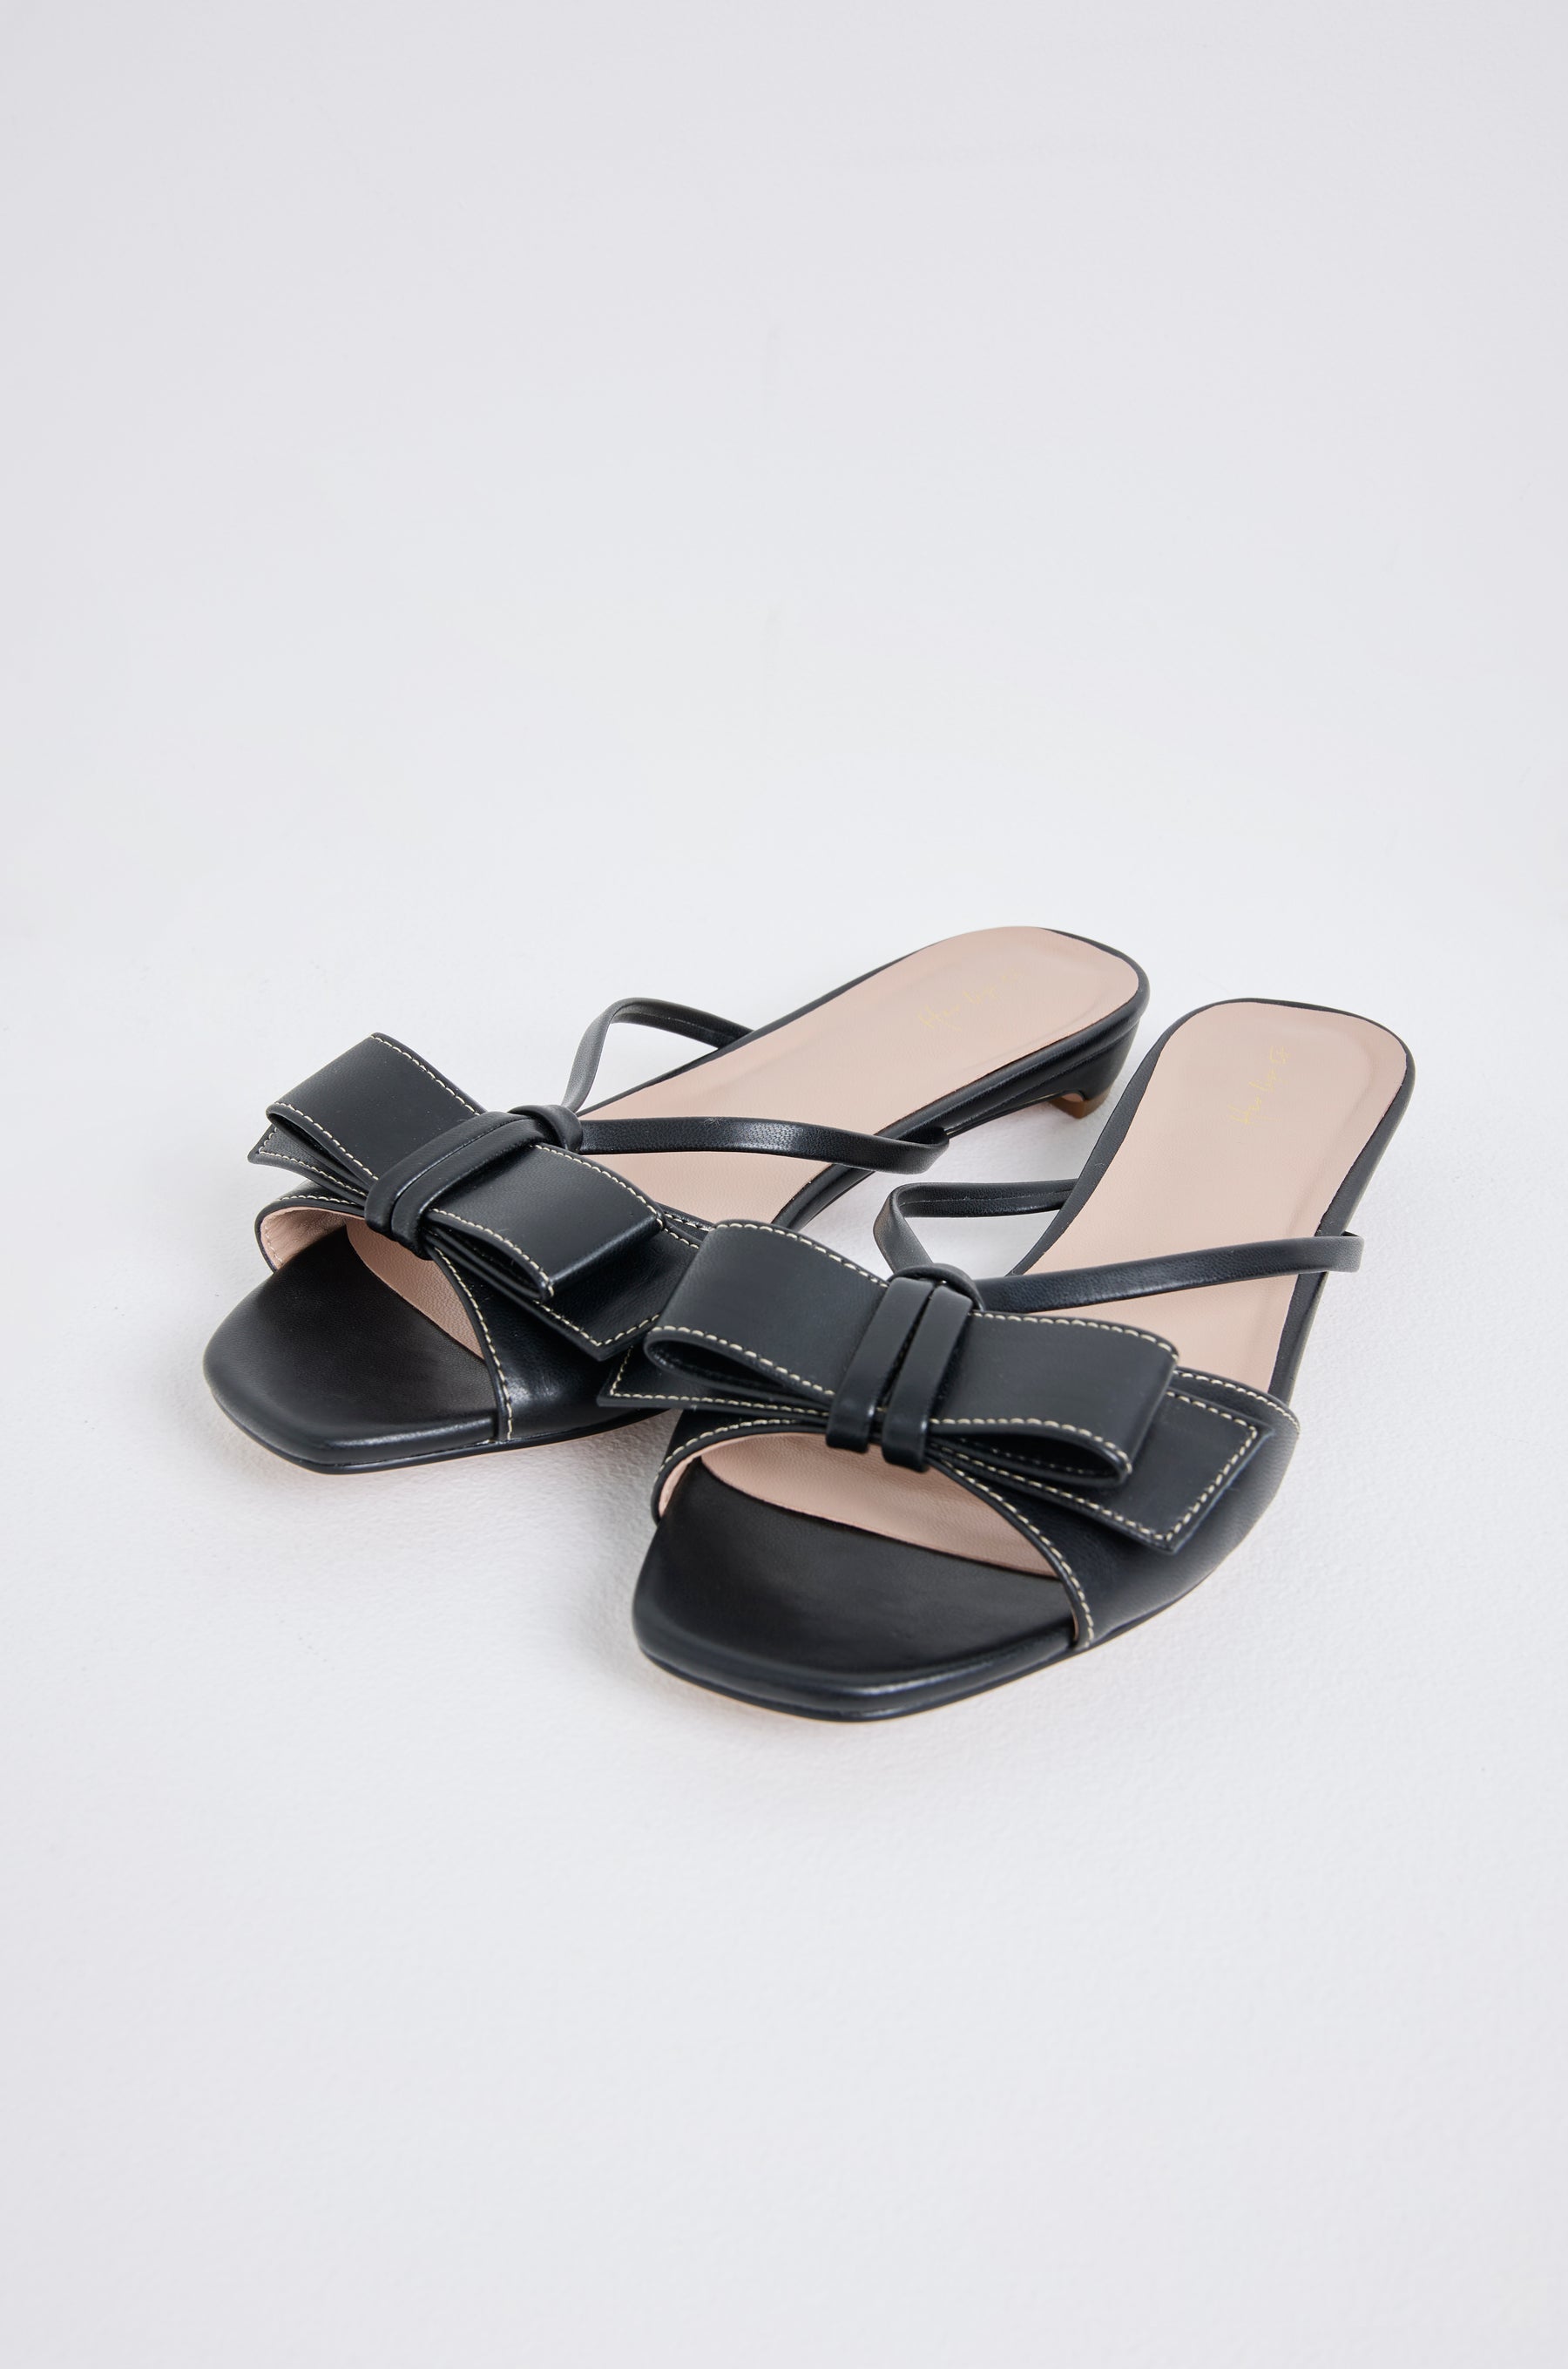 Fubail / 【black】Big Bow Sandals